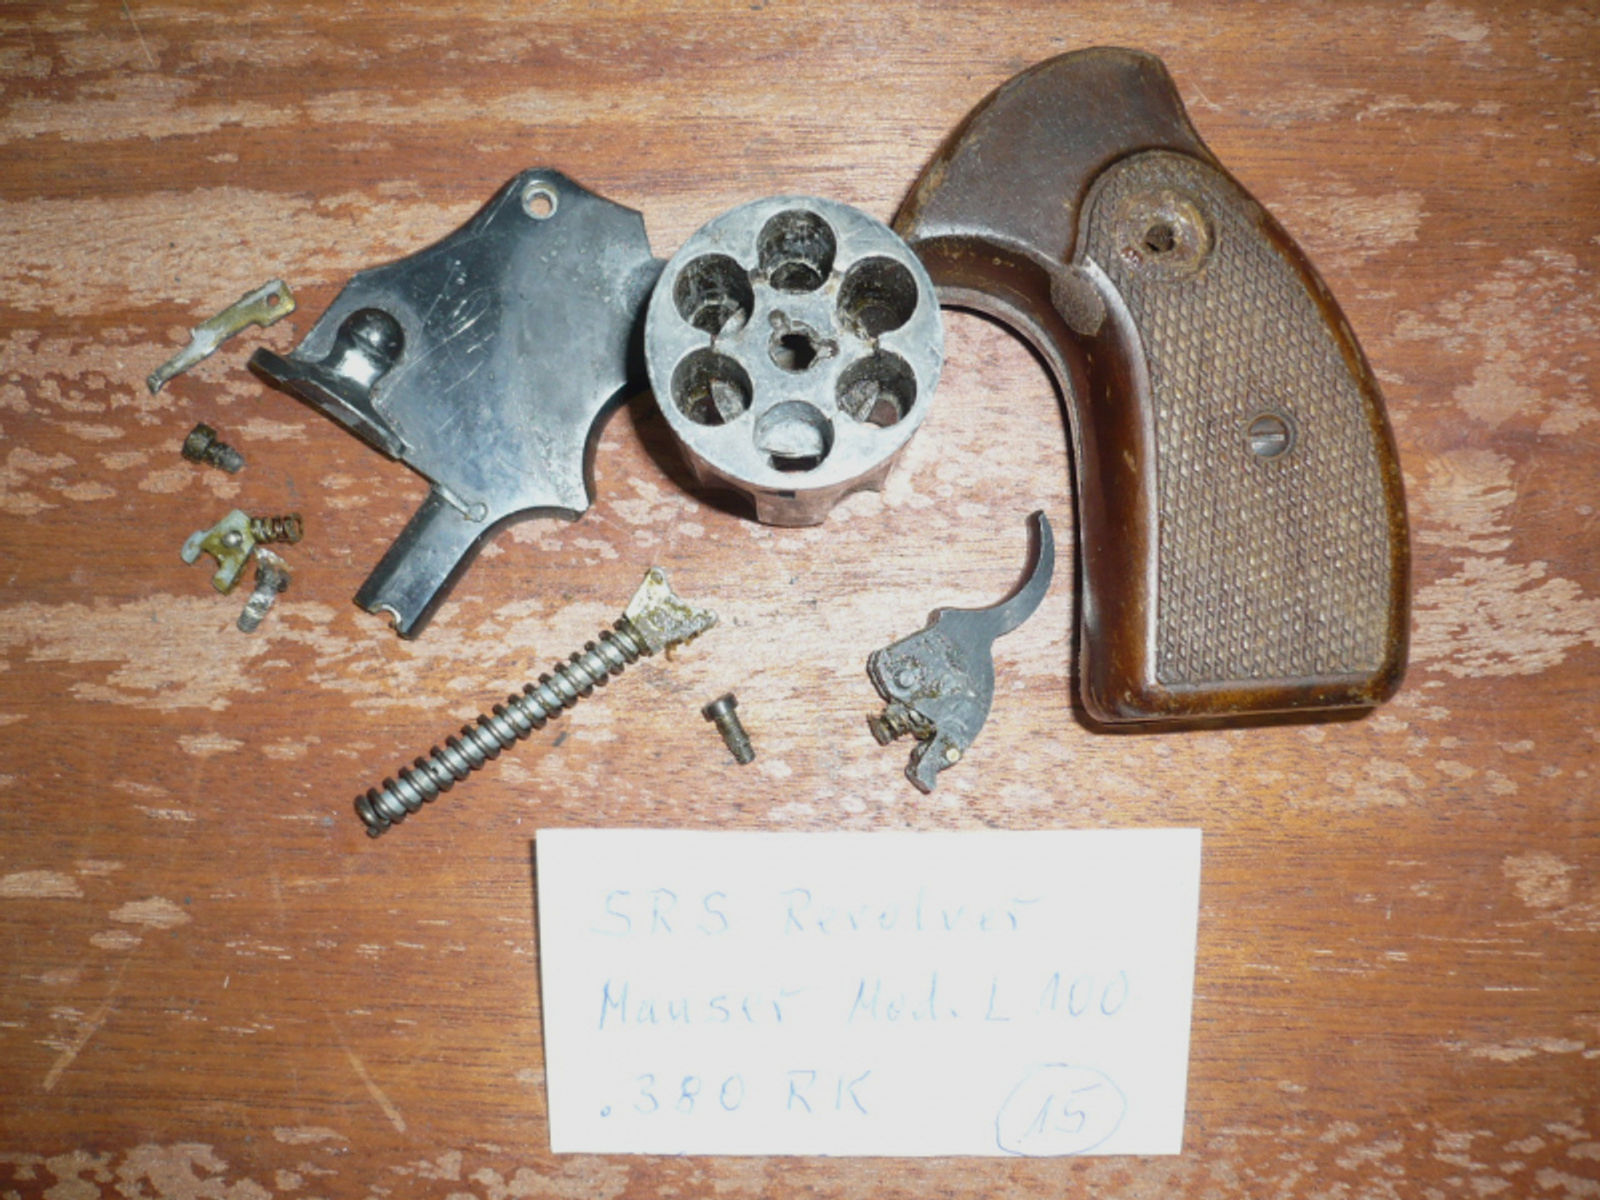 Ersatzteile für Revolver Mauser Mod. L100, Kal. .380 RK